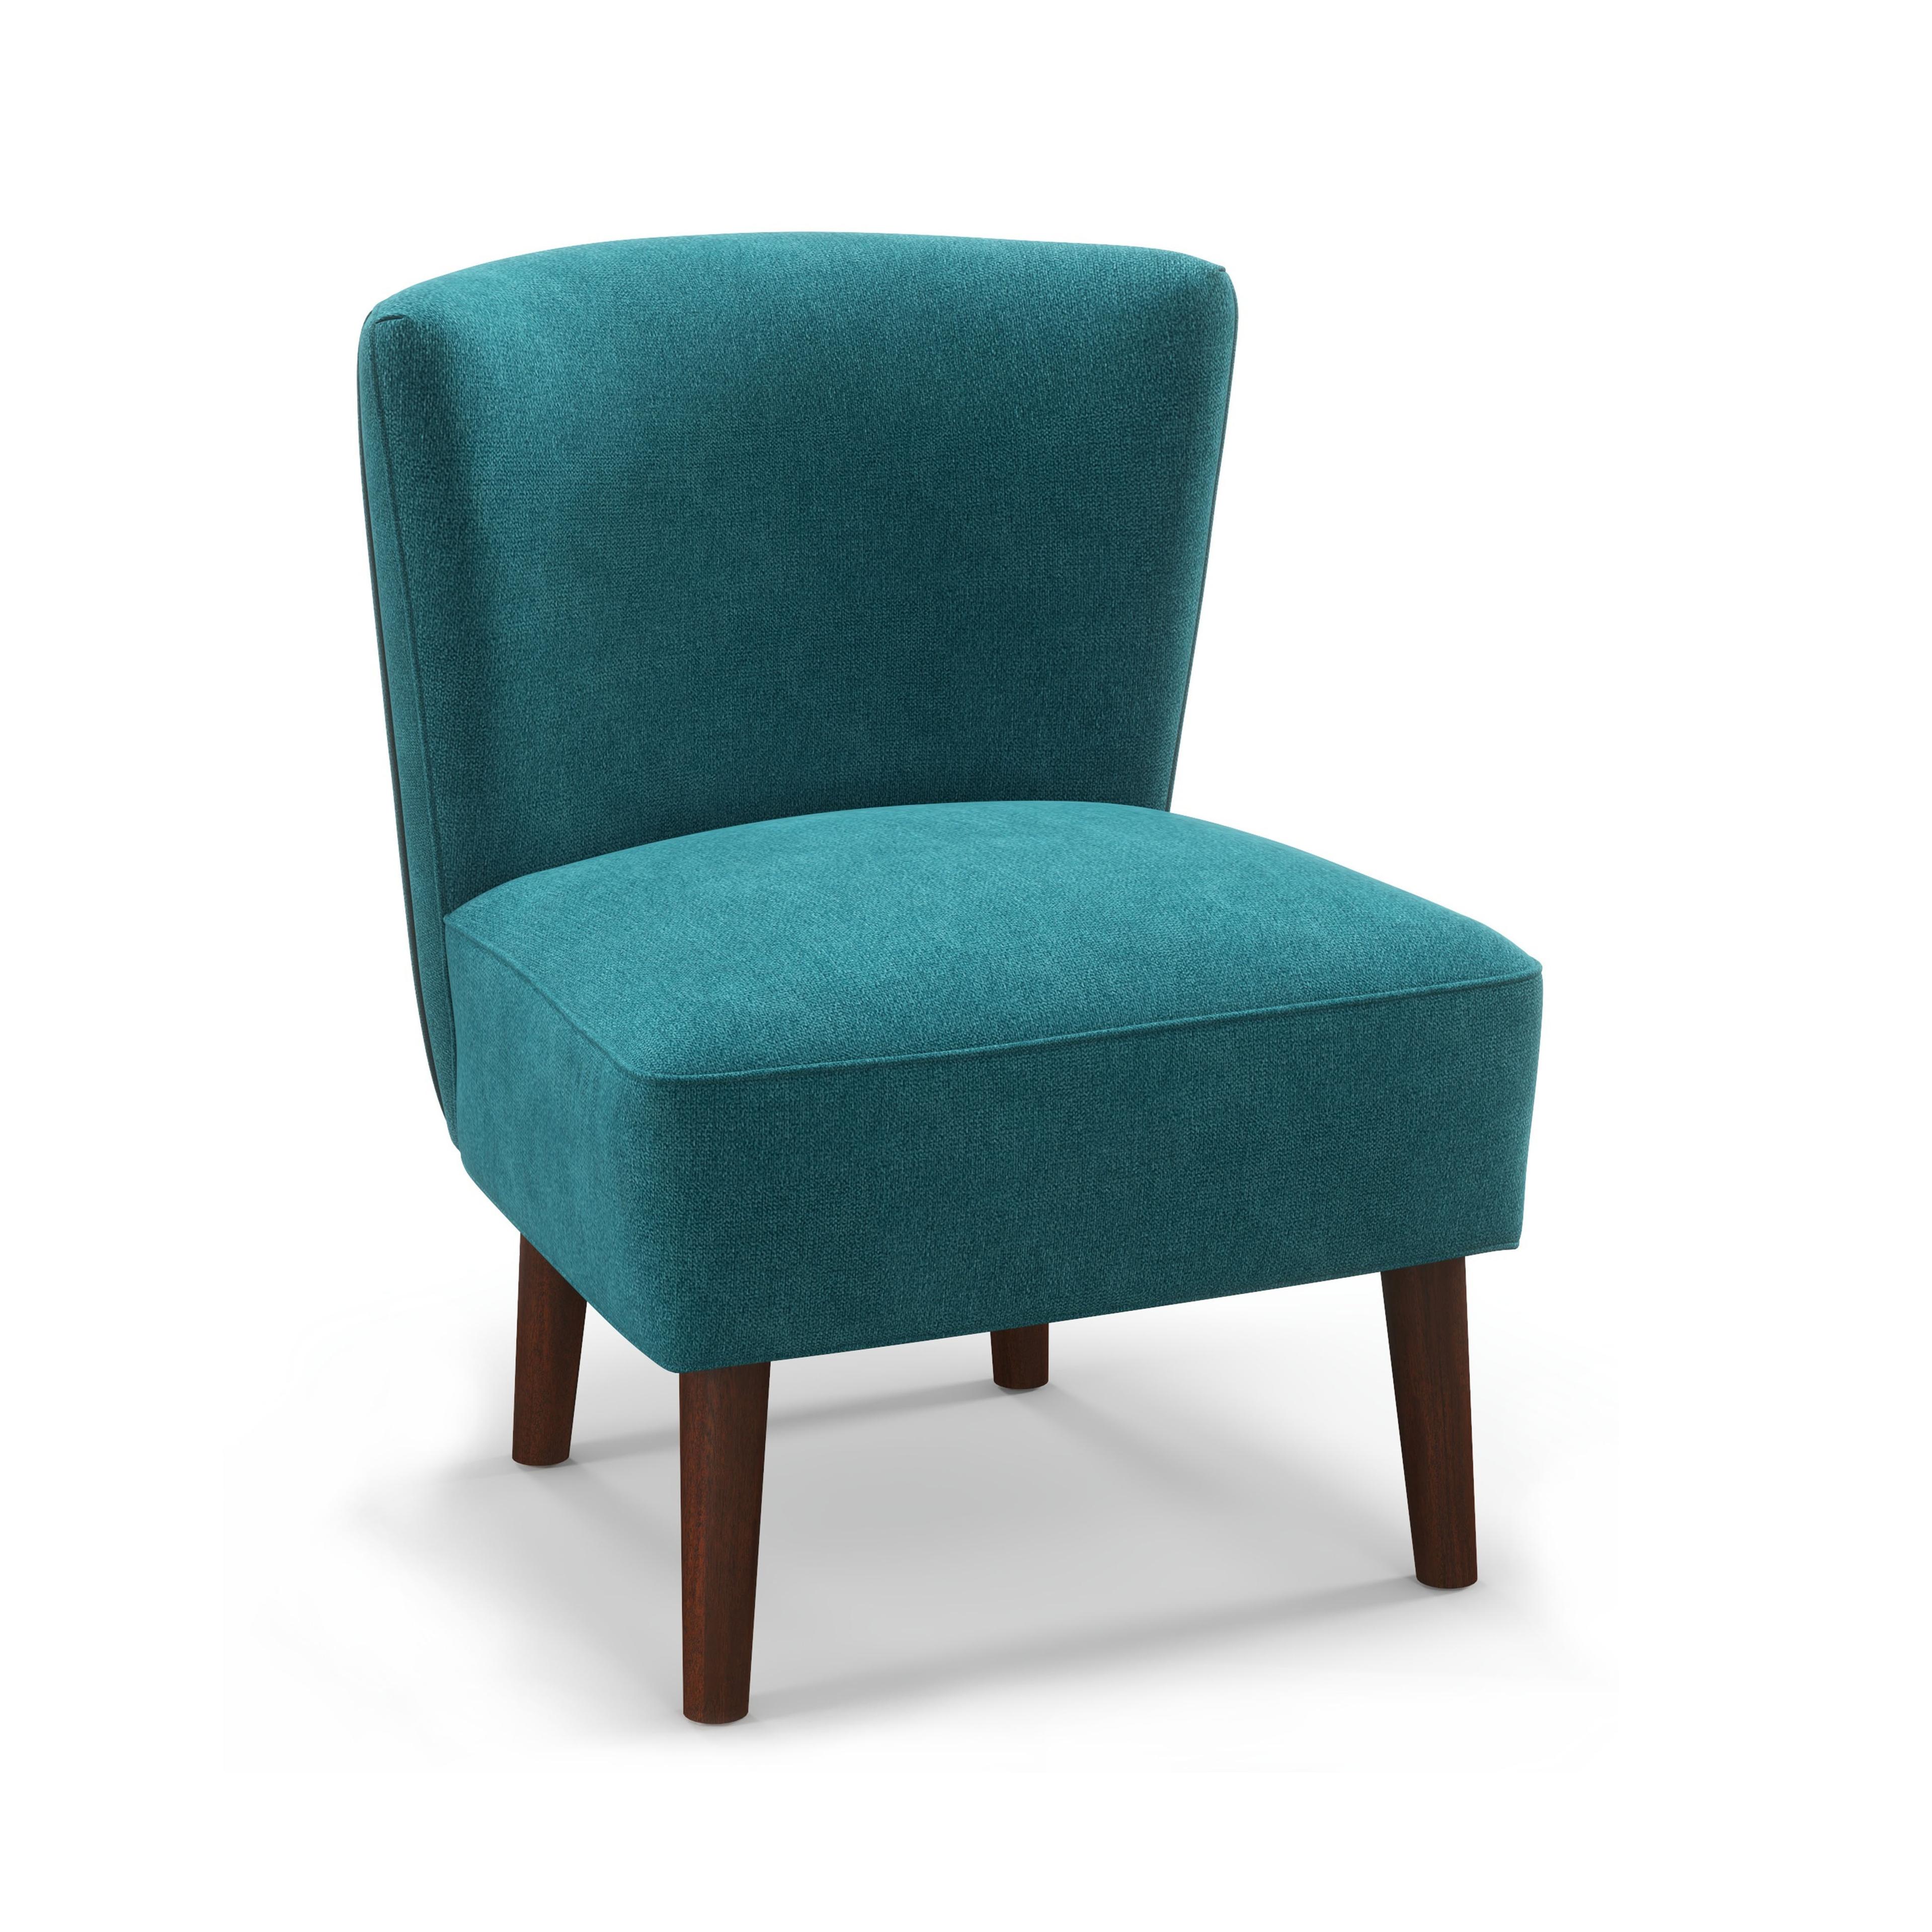 Rowan Teal Accent Chair